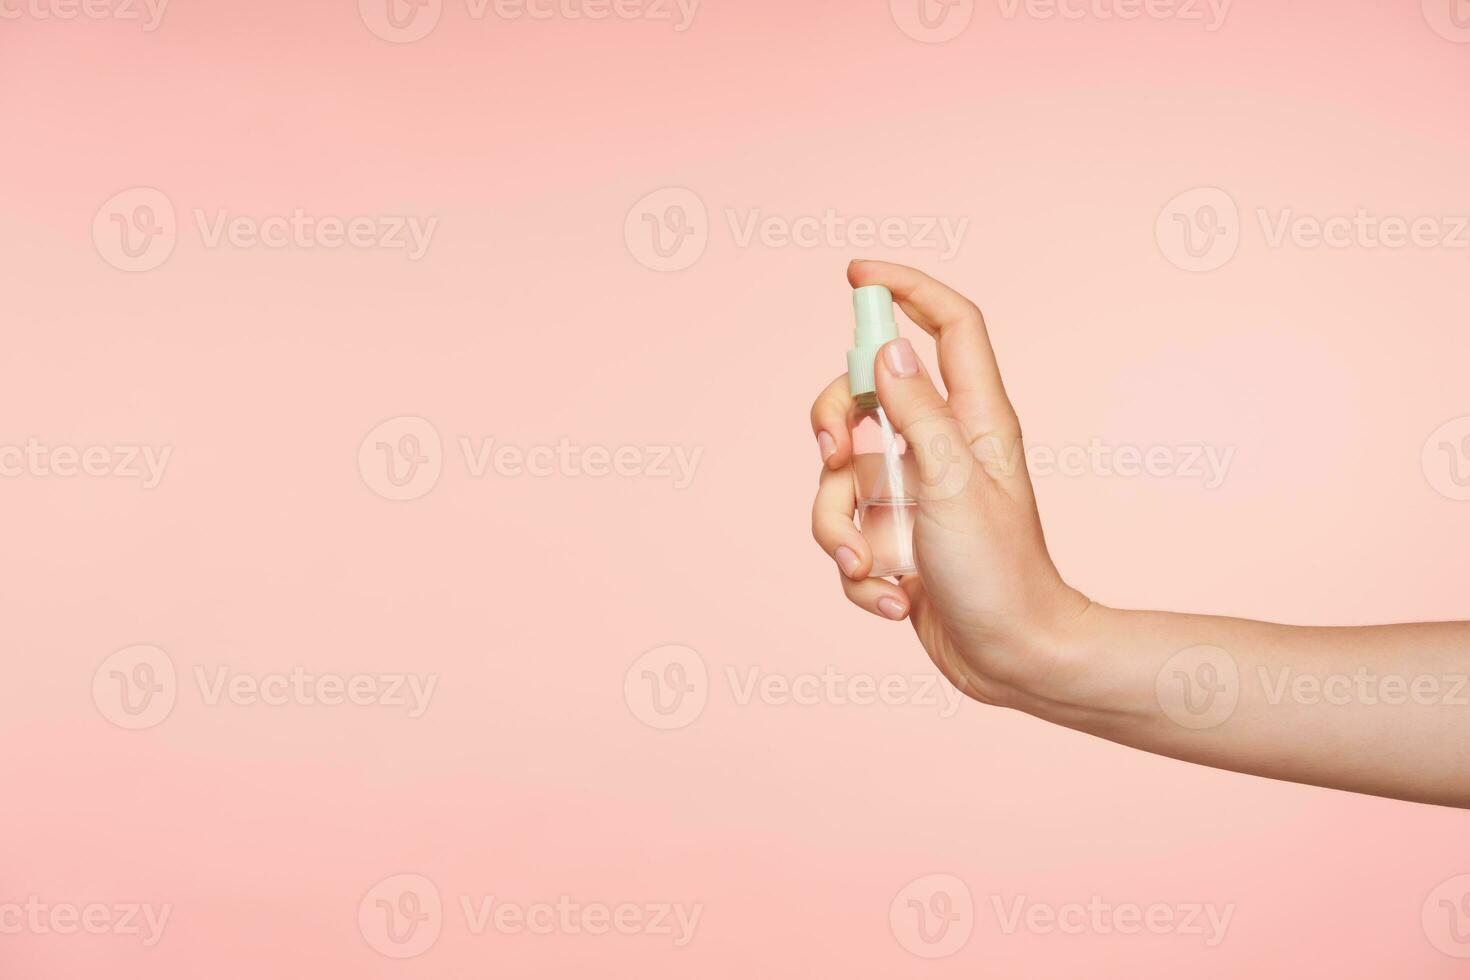 lato Visualizza di trasparente spray bottiglia con liquido essere tenuto di giovane femminile mano con nudo manicure mentre andando per spingere pulsante, isolato al di sopra di rosa sfondo foto